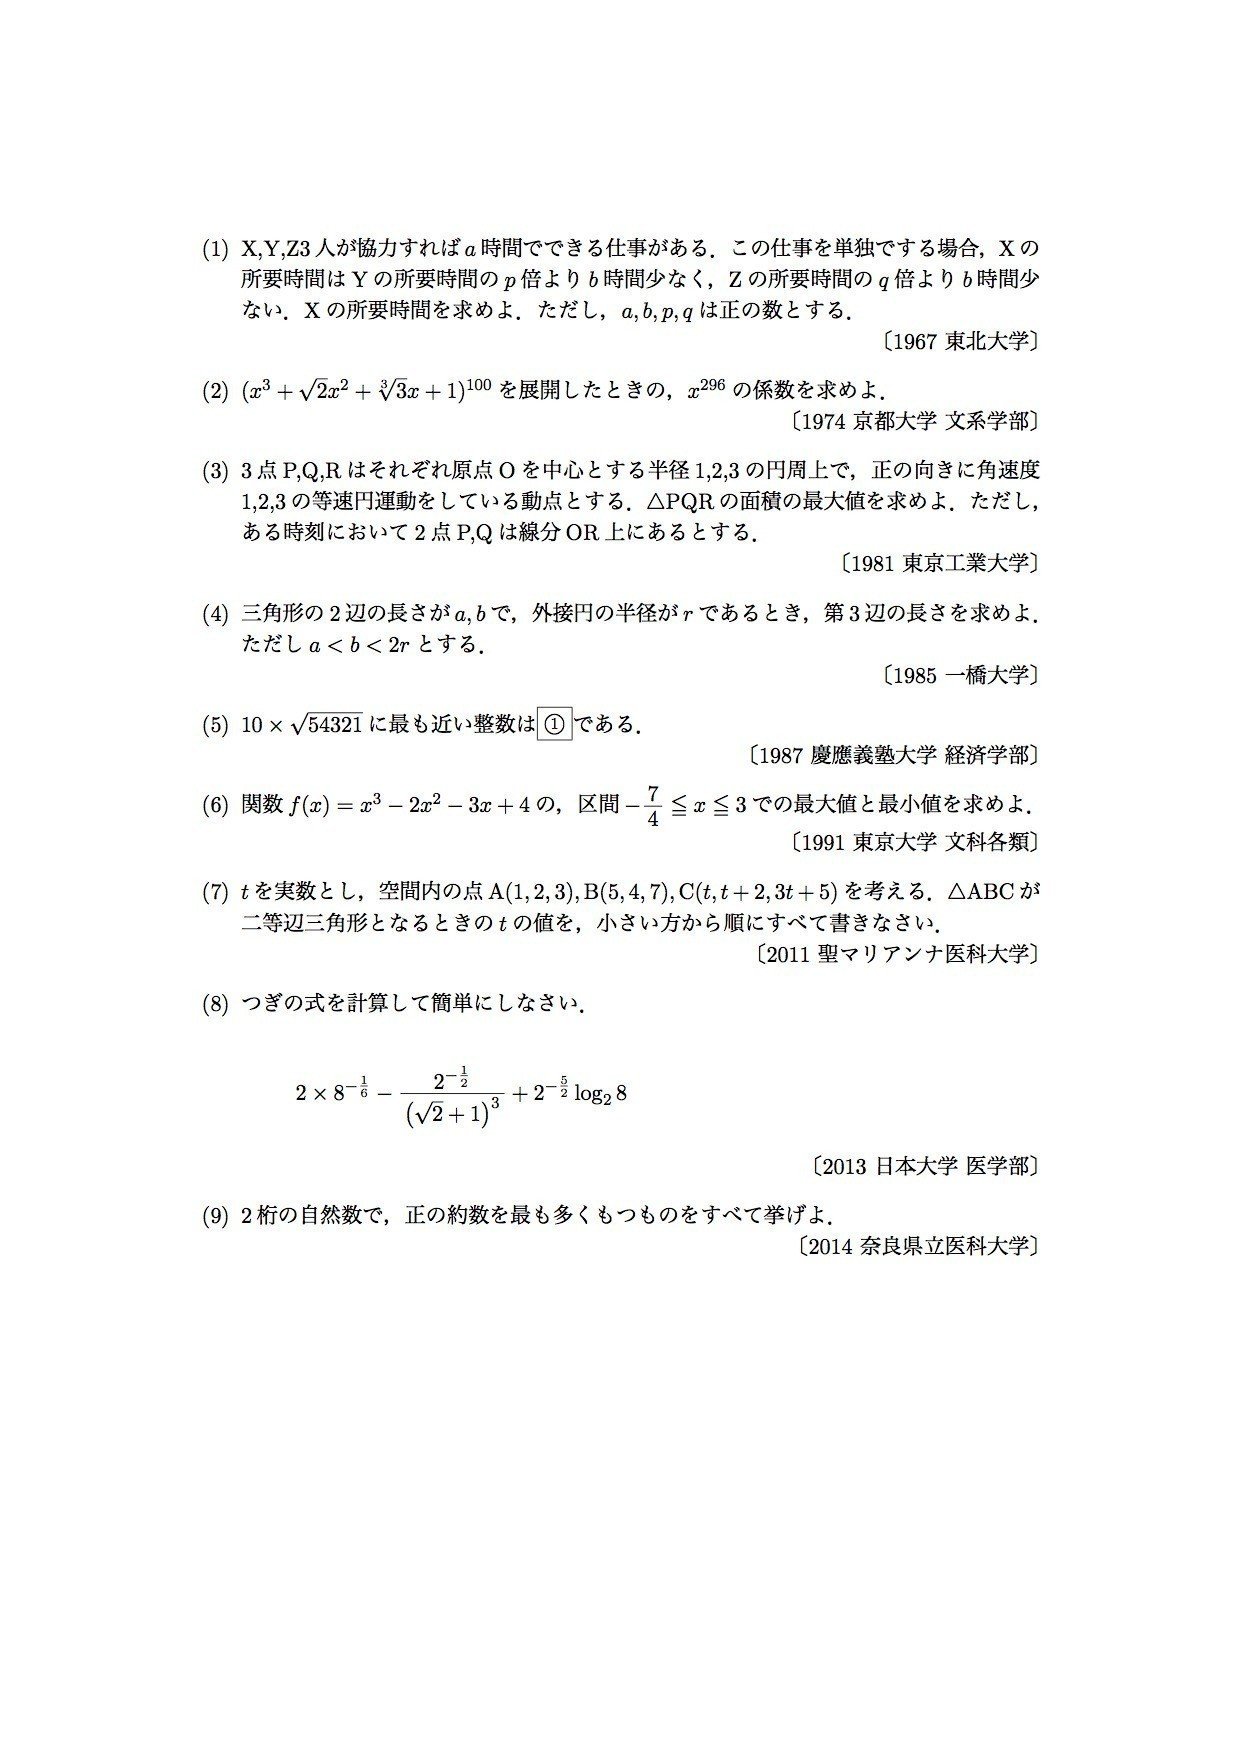 数学 イラッとくる問題を集めてみました Uenotakato 上野尚人 イマイさん 数学講師 Note